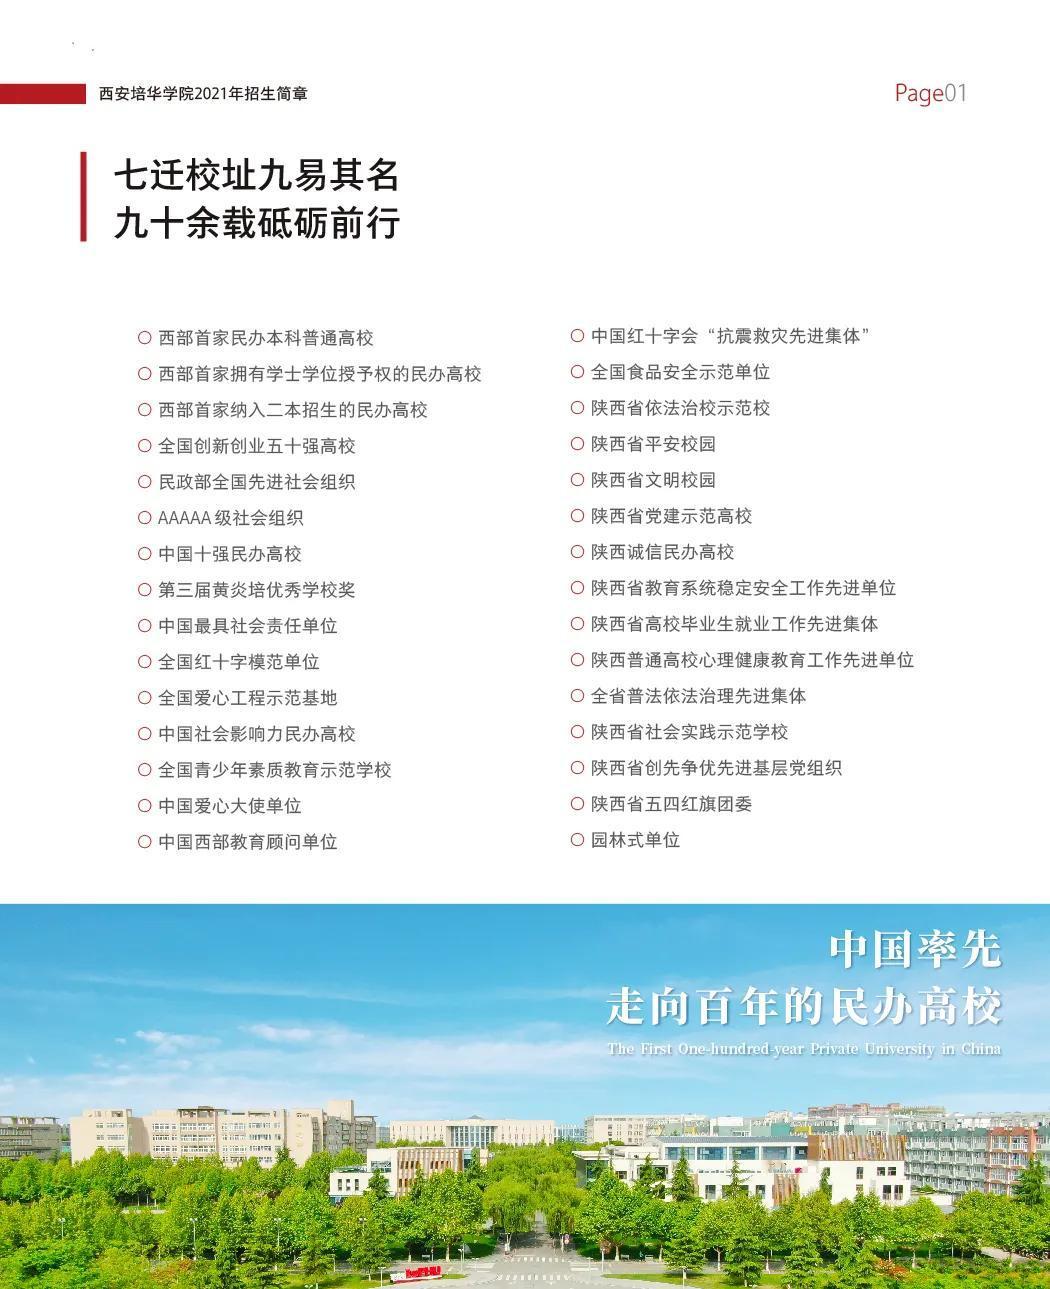 西安培华学院2021年招生简章正式发布